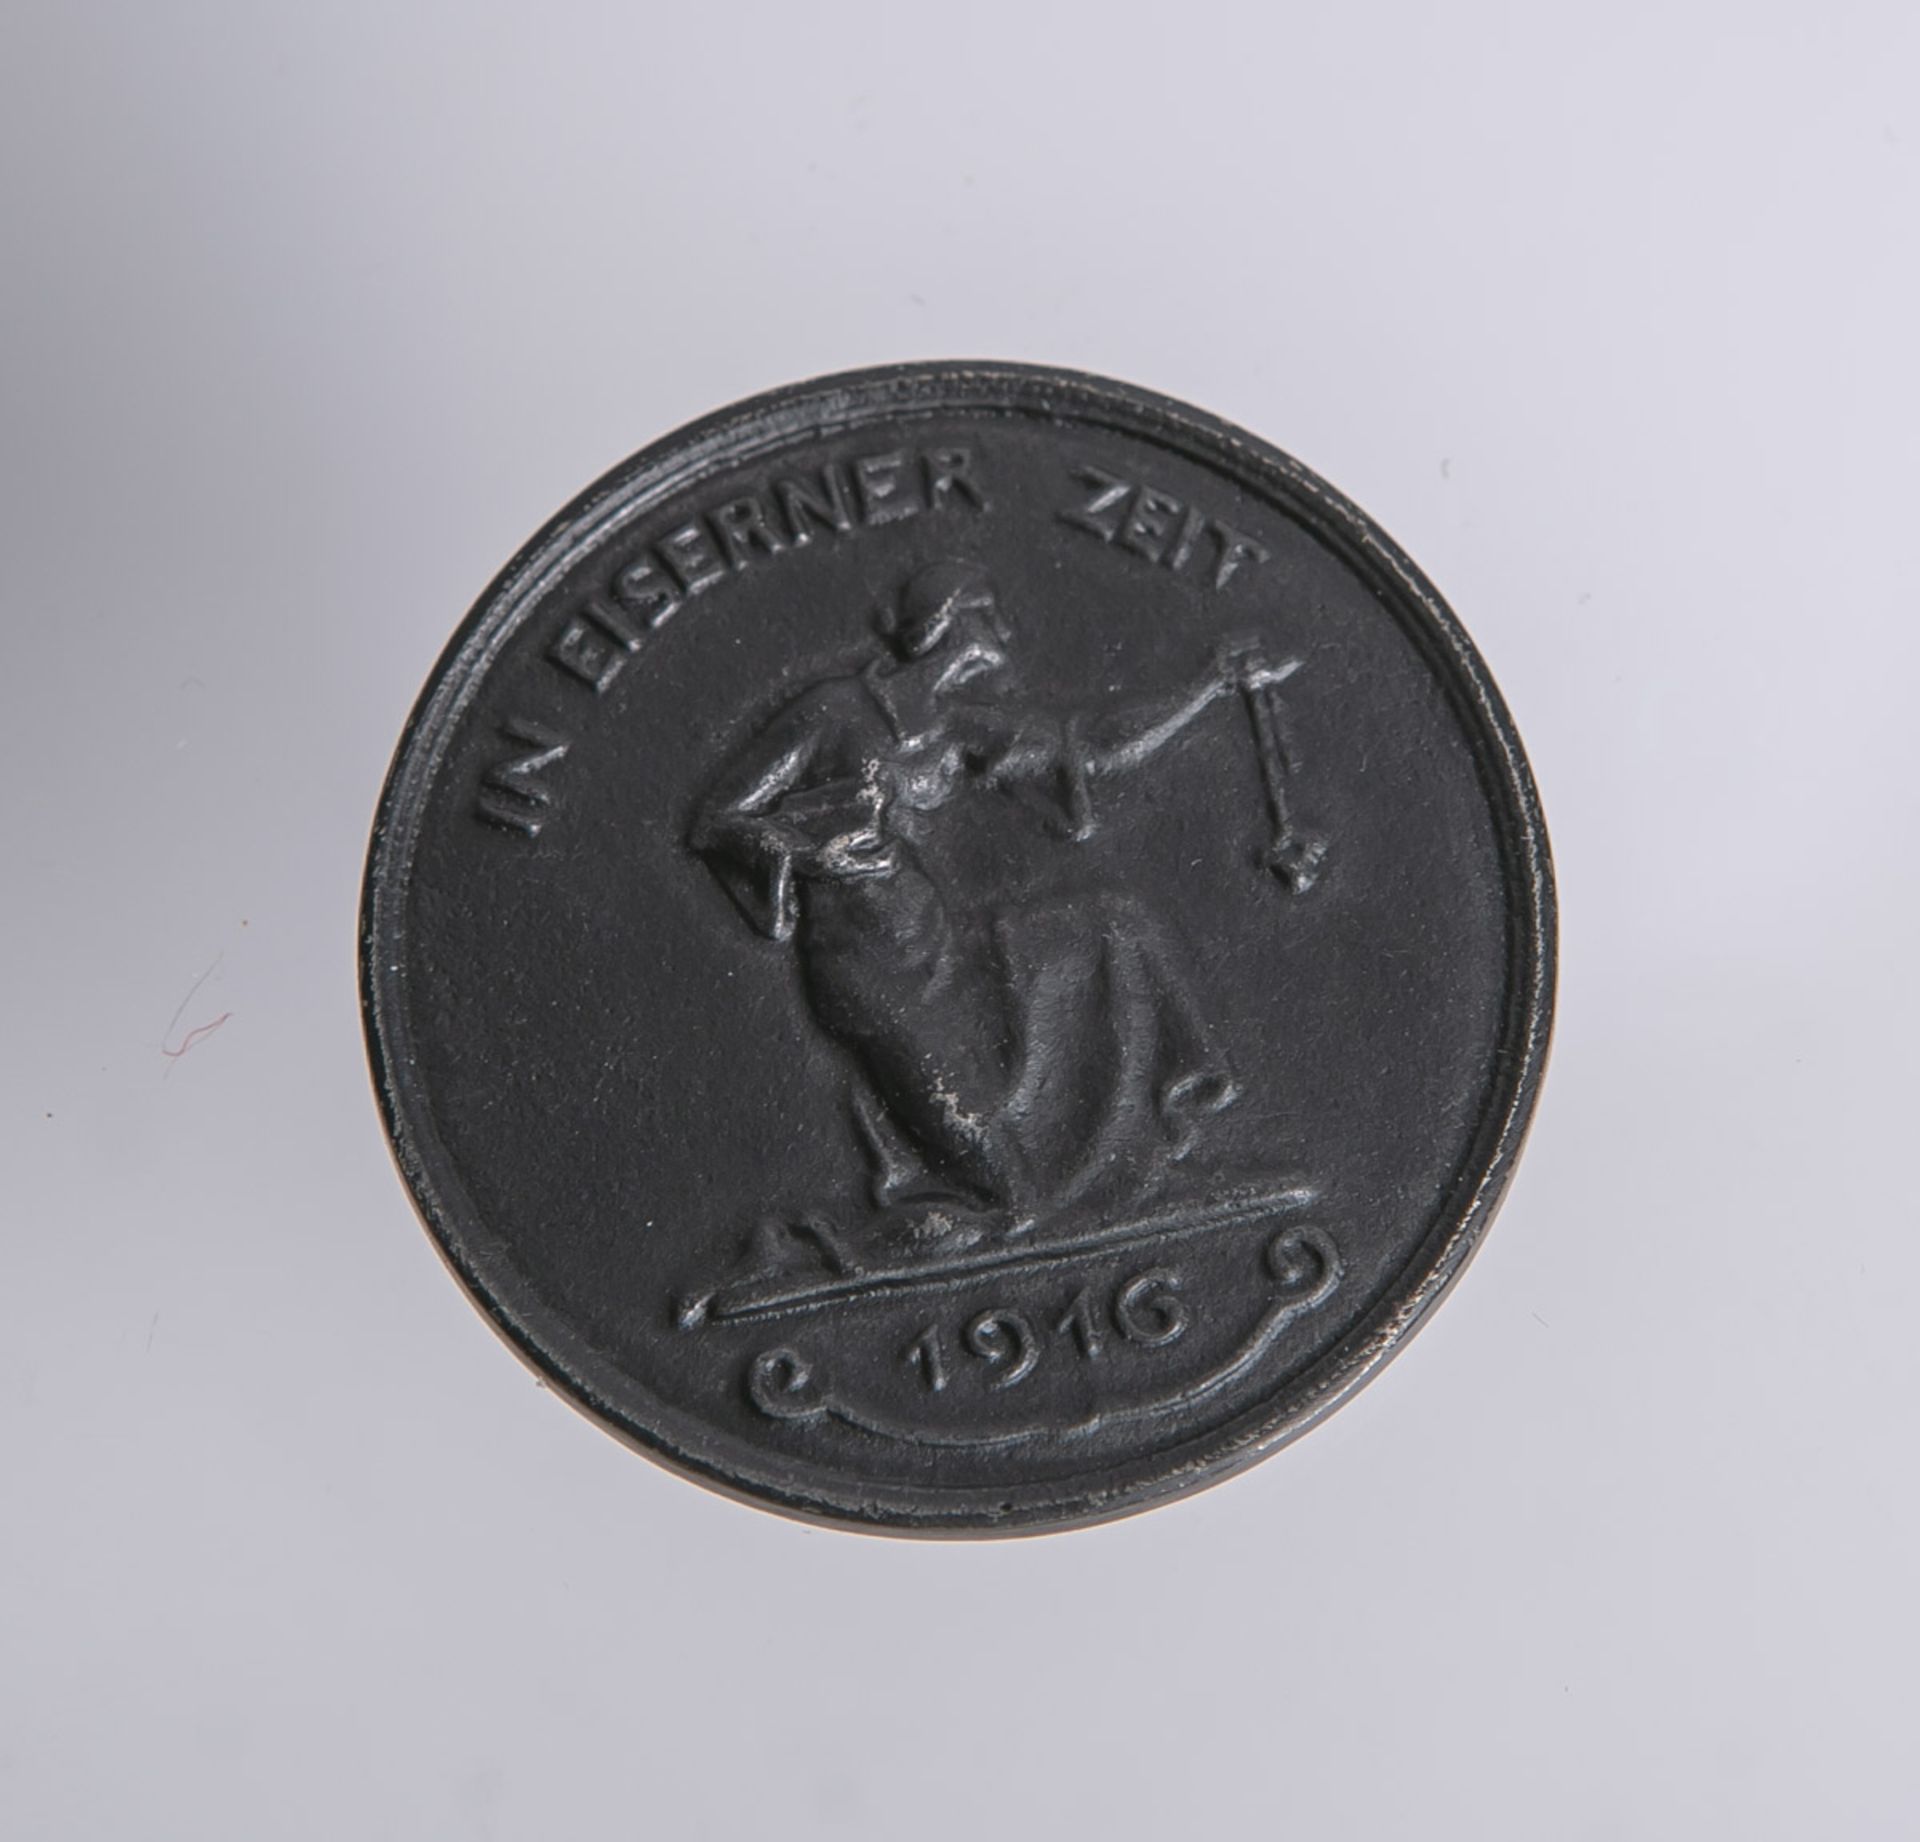 Medaille "In Eiserner Zeit" (1916), "Gold gab ich zur Wehr-Eisen nahm ich zur Ehr", Dm.